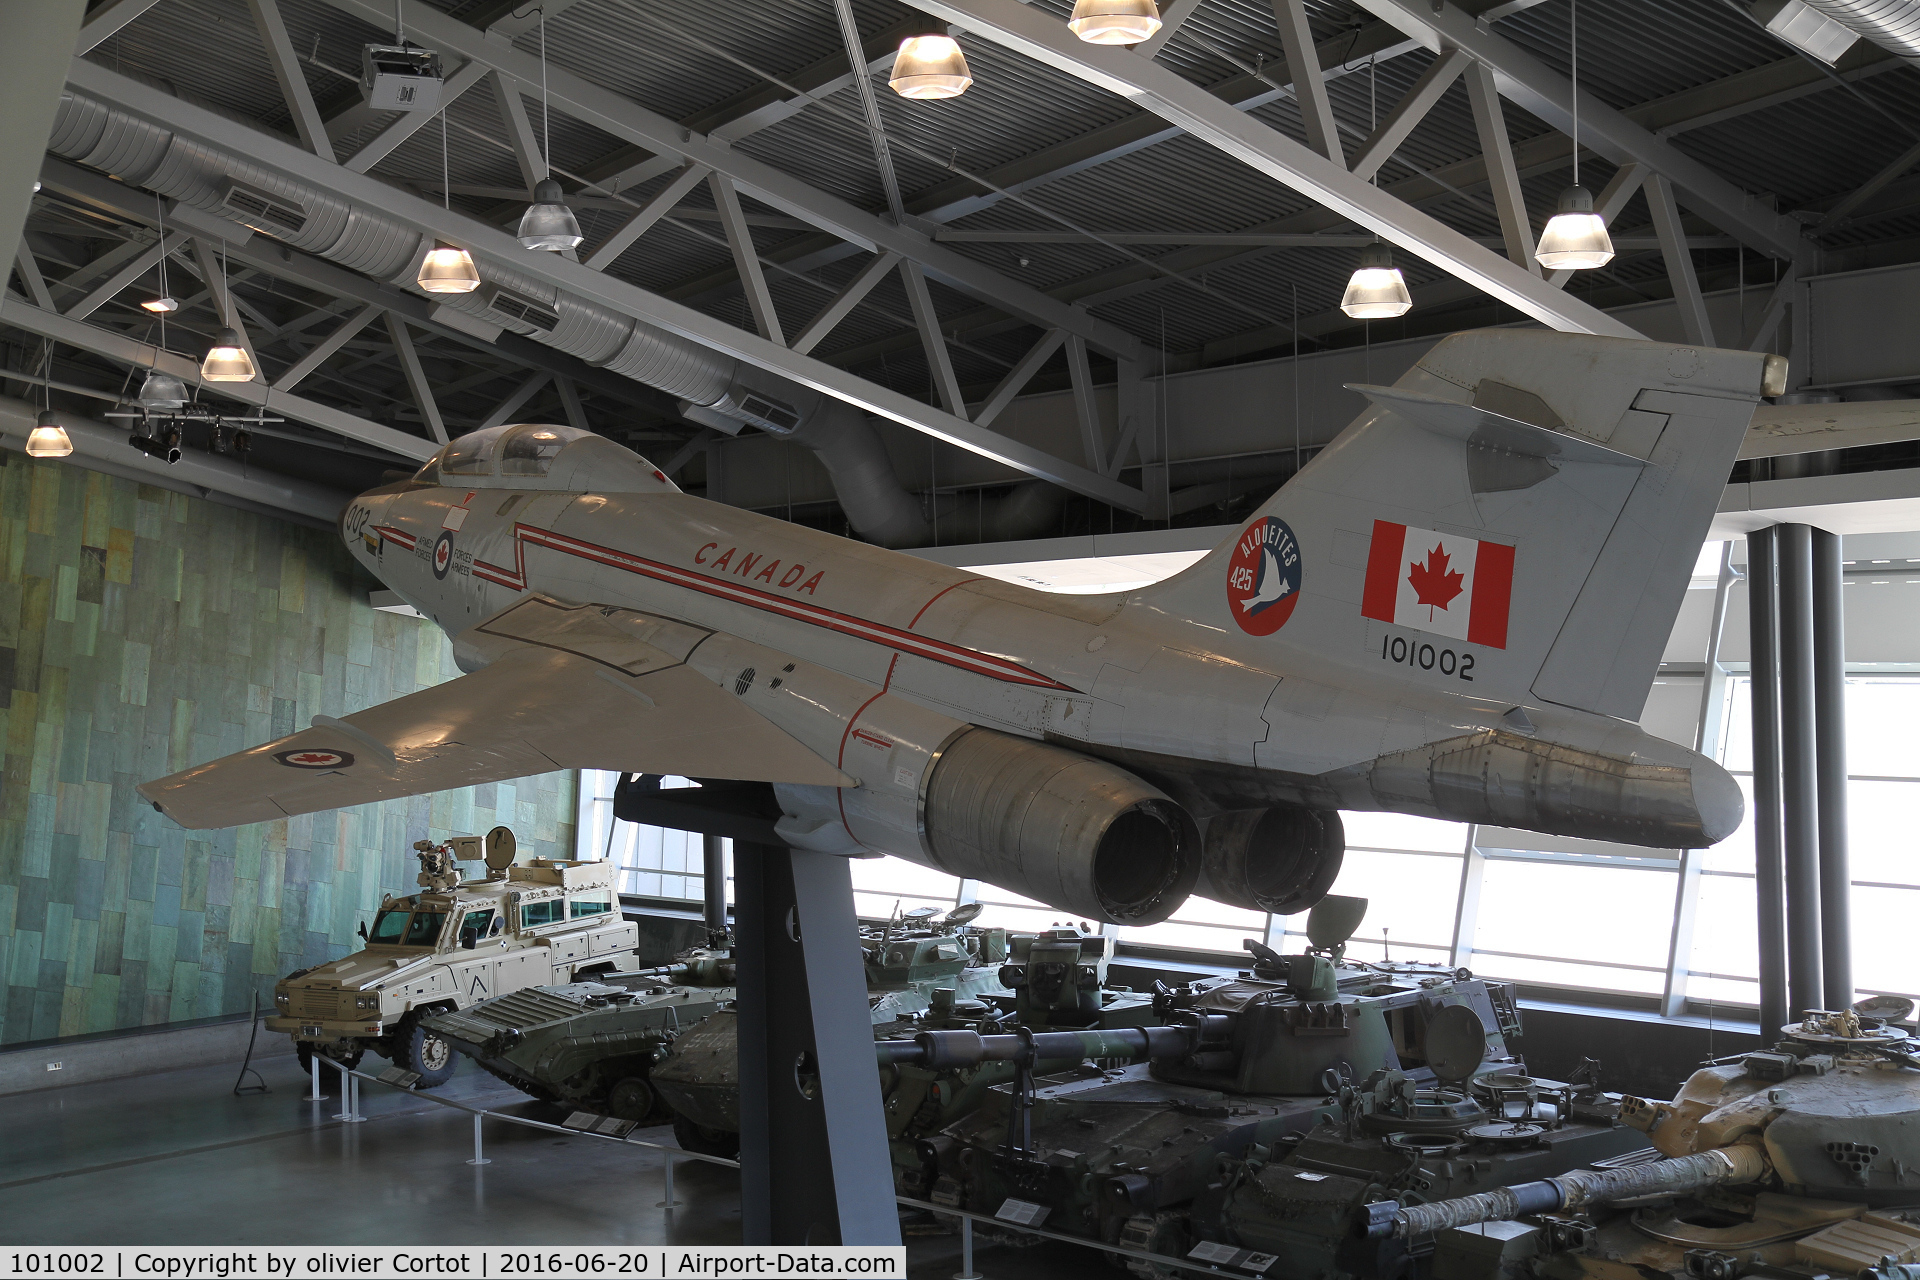 101002, McDonnell CF-101F Voodoo C/N 285, Ottawa war museum